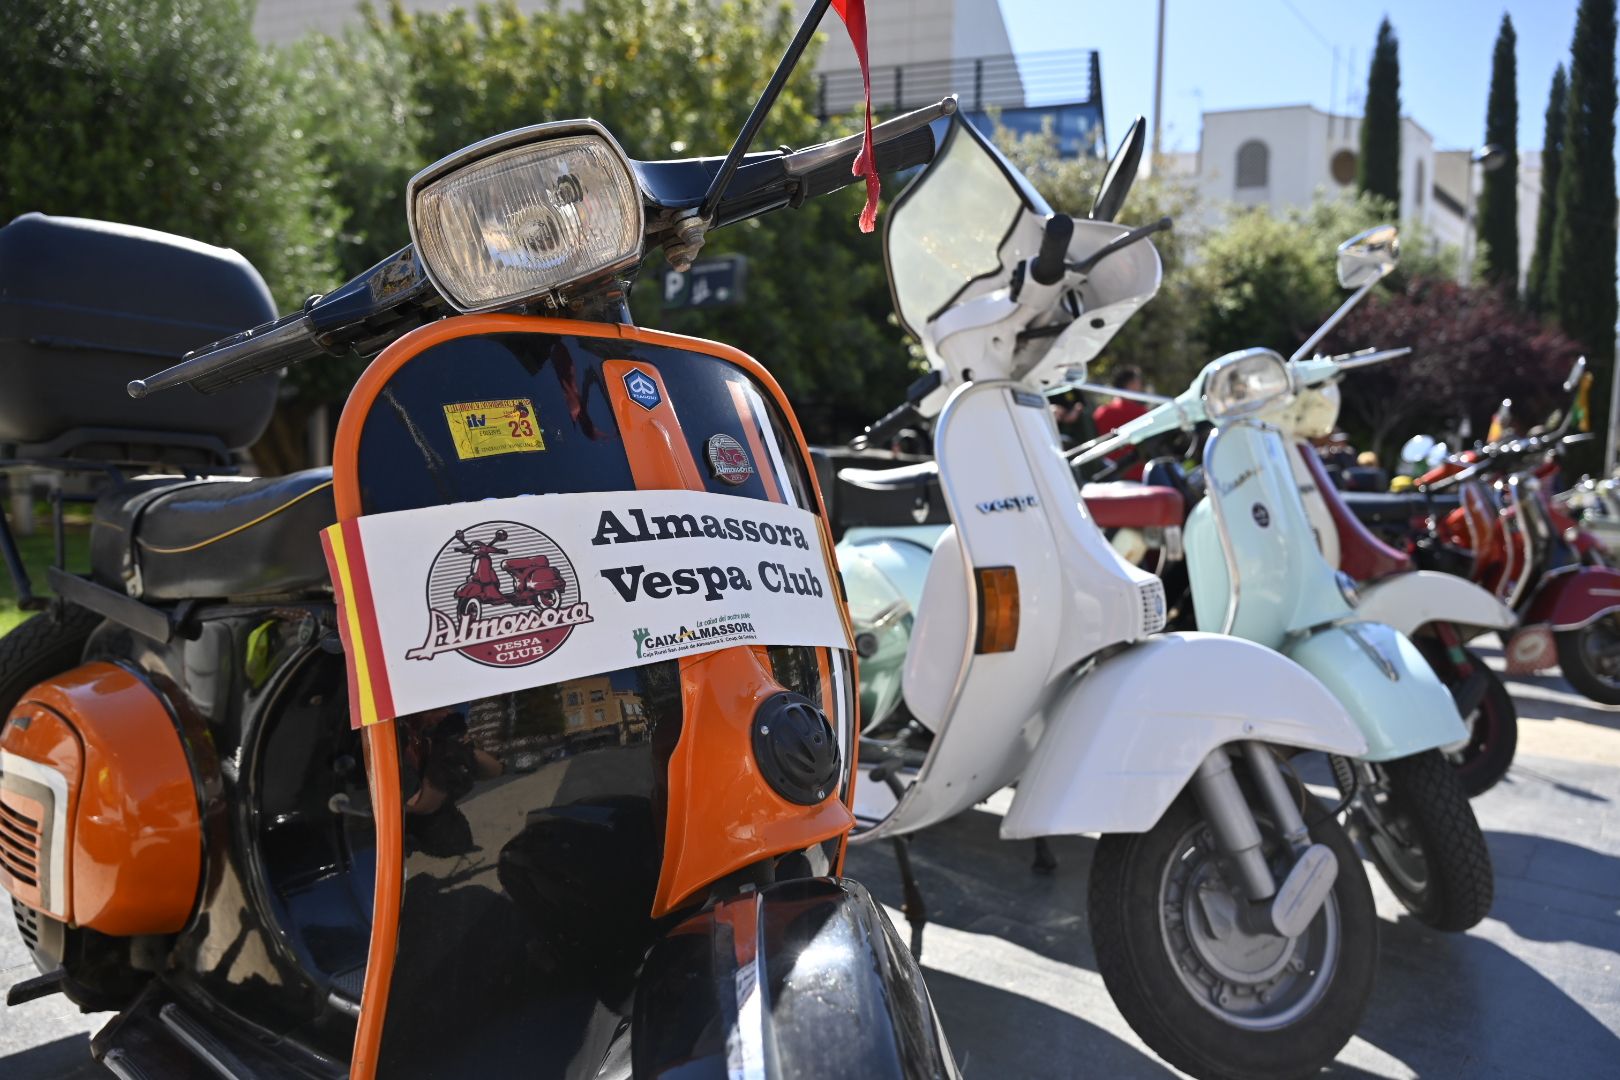 Galería de imágenes: Motos clásicas y vespas 'invaden' Almassora